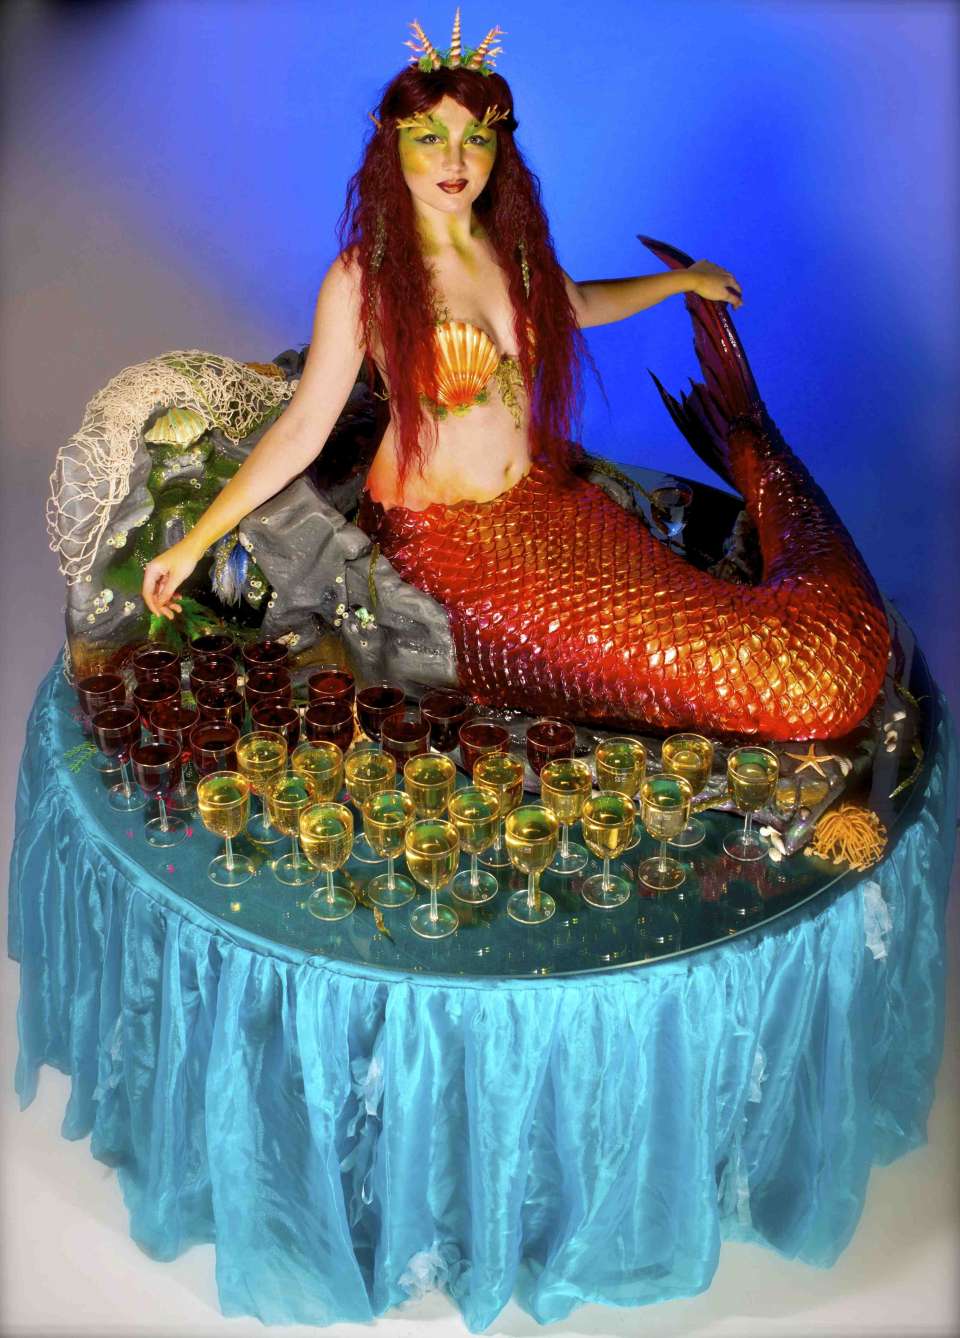 Mermaid table